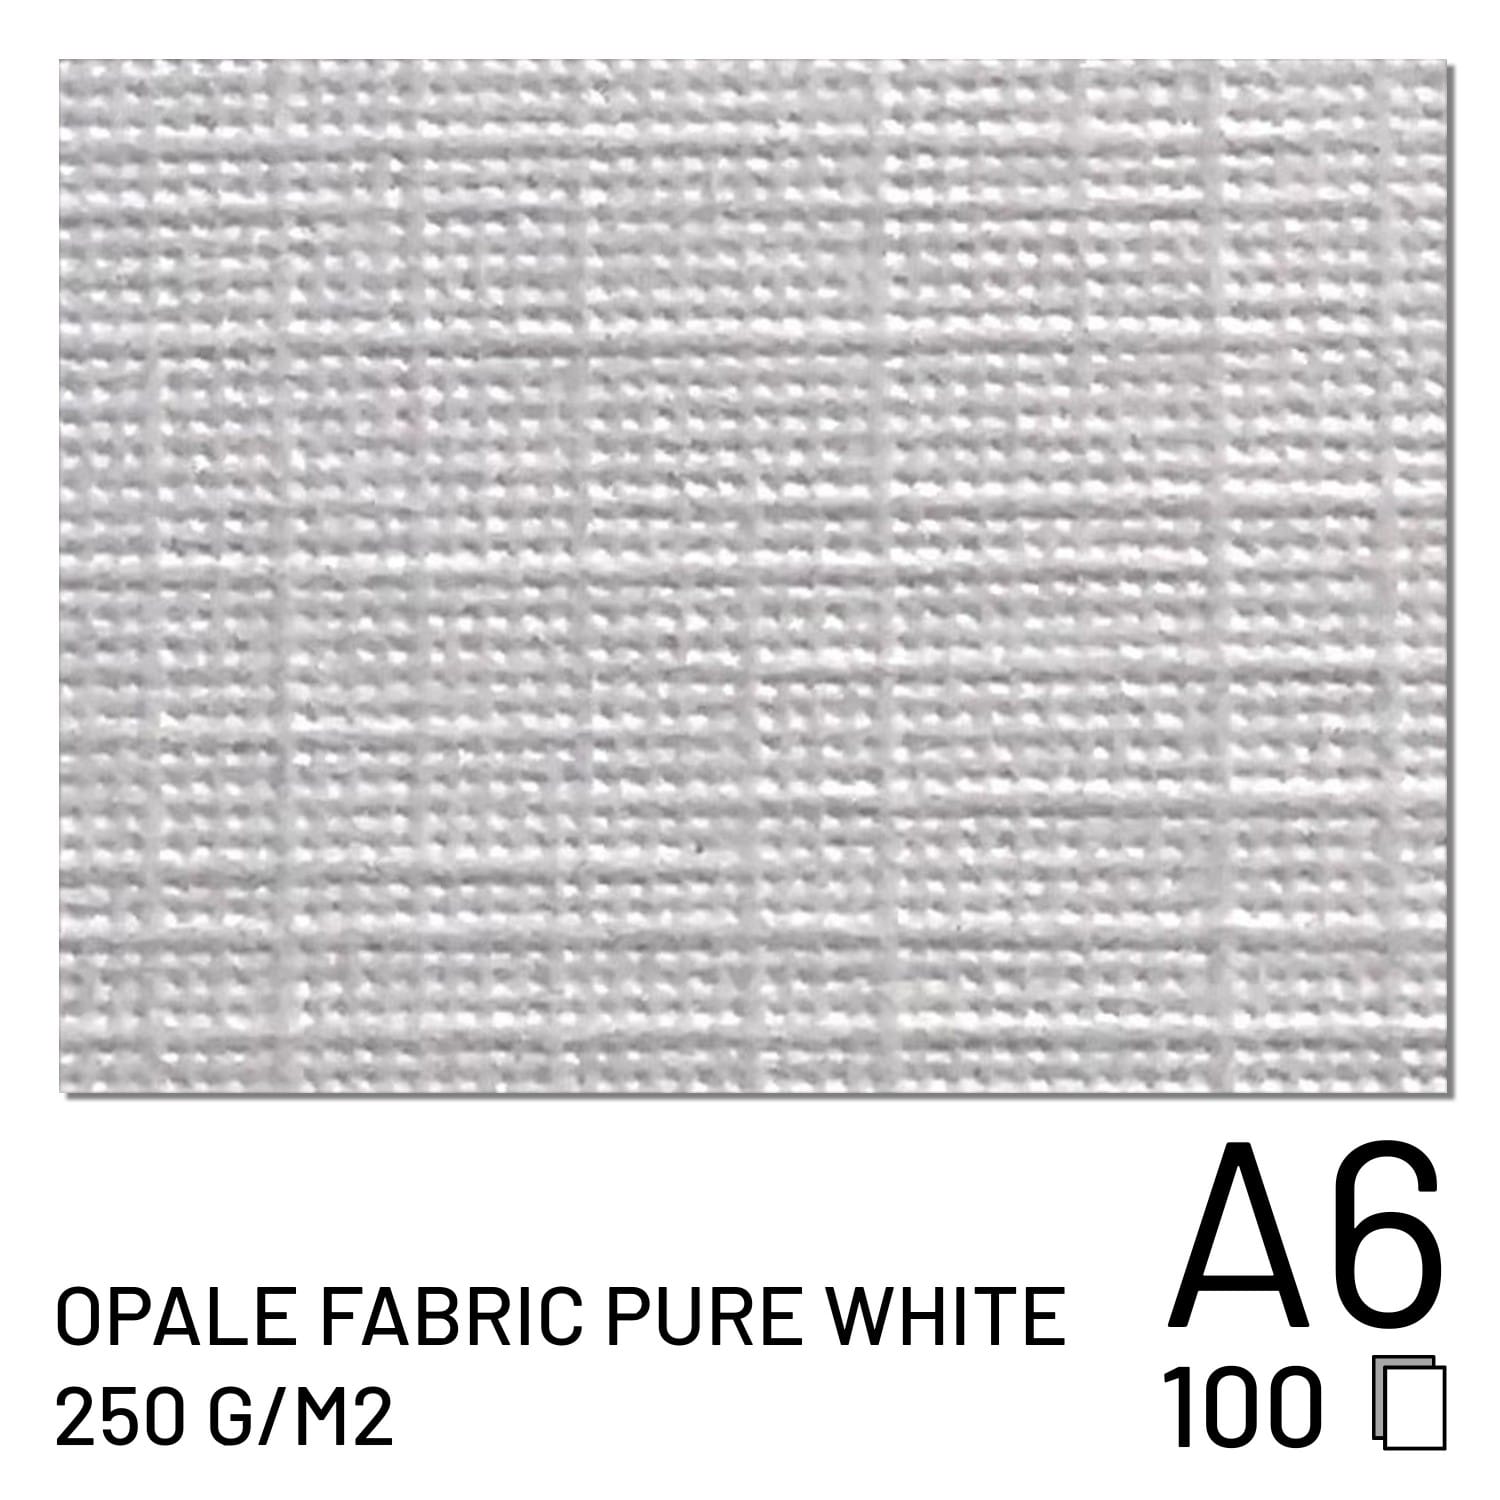 Papier FUJI Opale Fabric Pure White 250g A6 (100 feuilles) (70100148100)